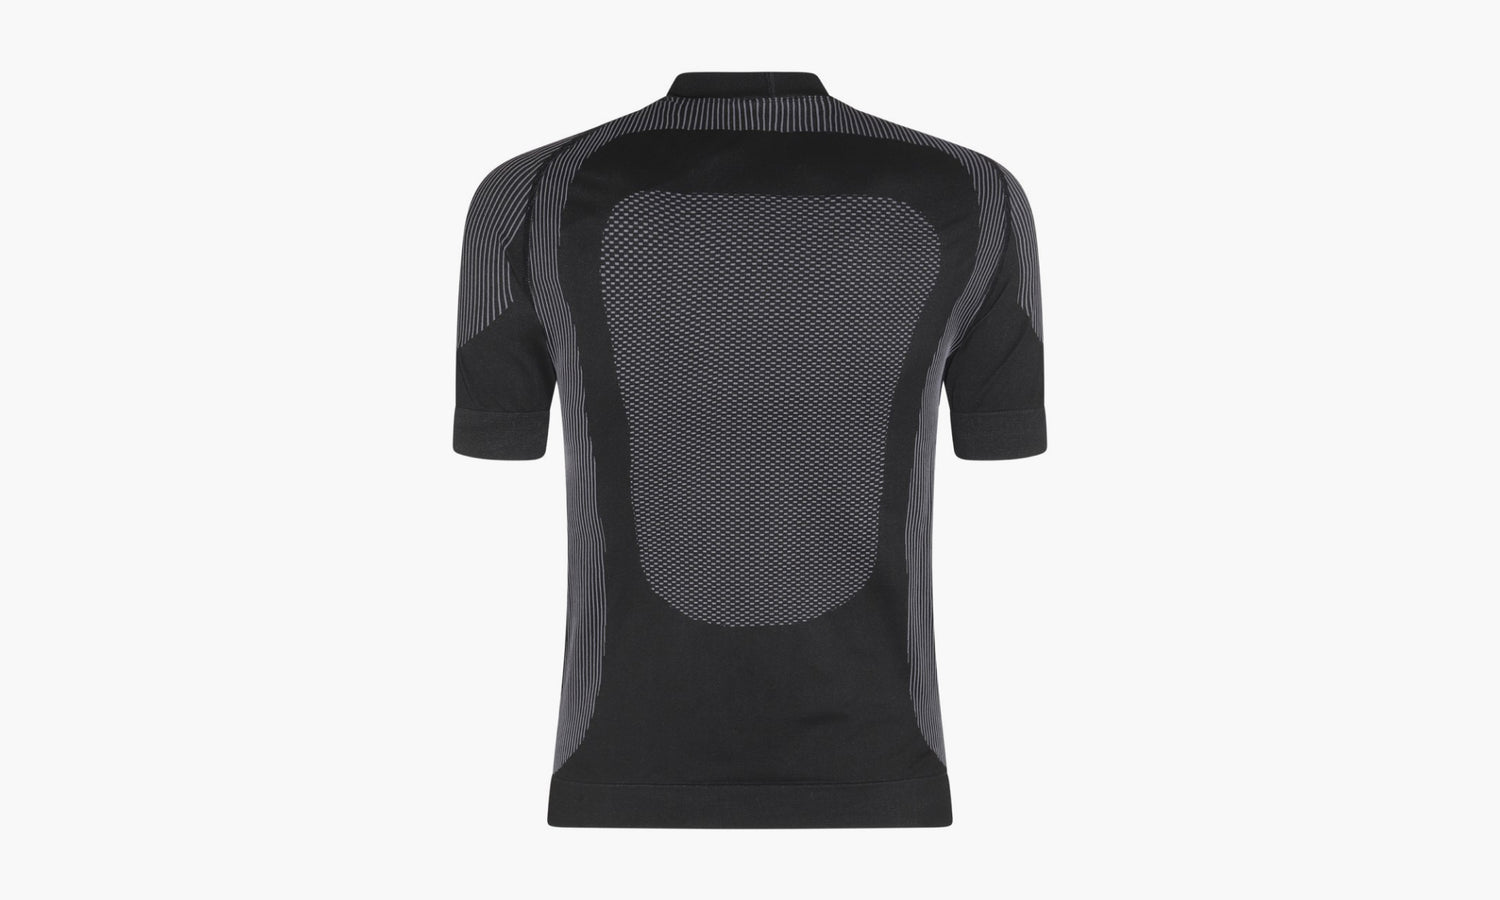 MISBHV Sport T-Shirt «Black White» - 231M503 | Grailshop